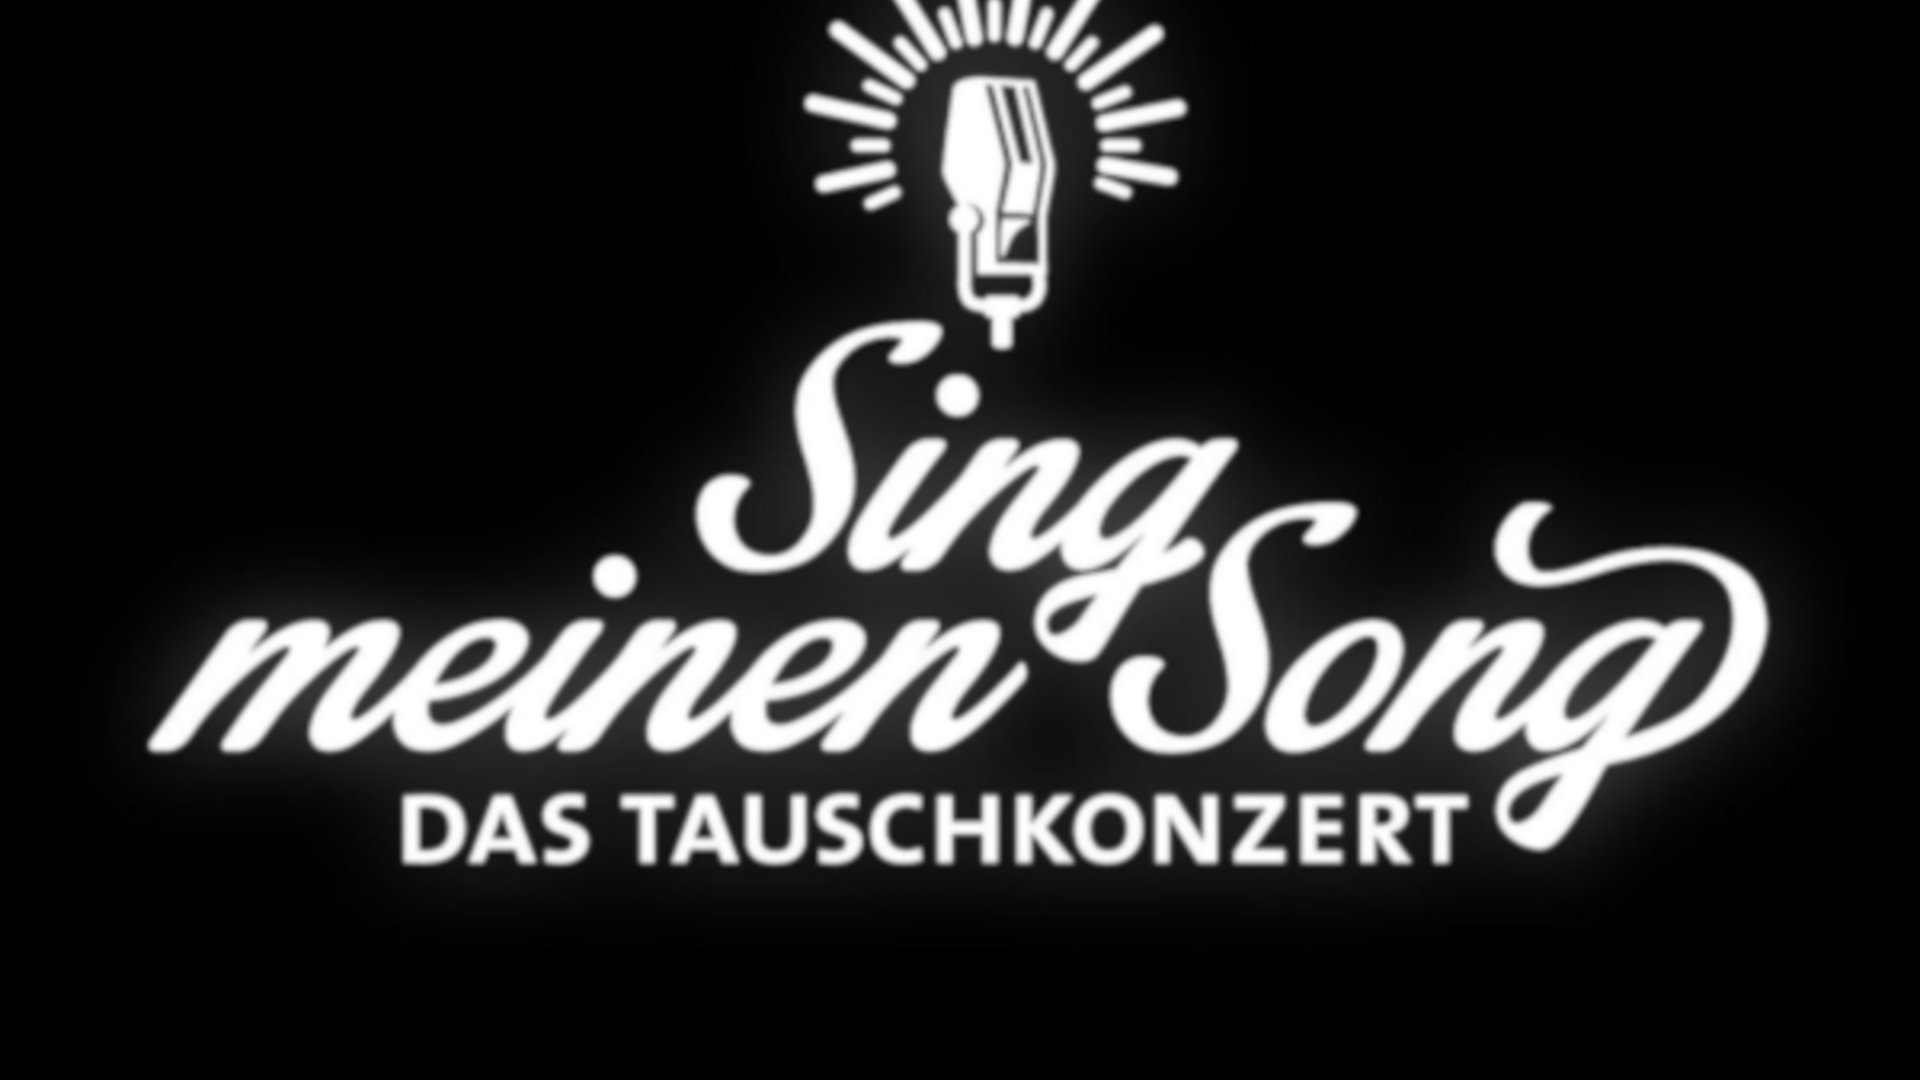 Sing meinen song staffel 4 online sehen